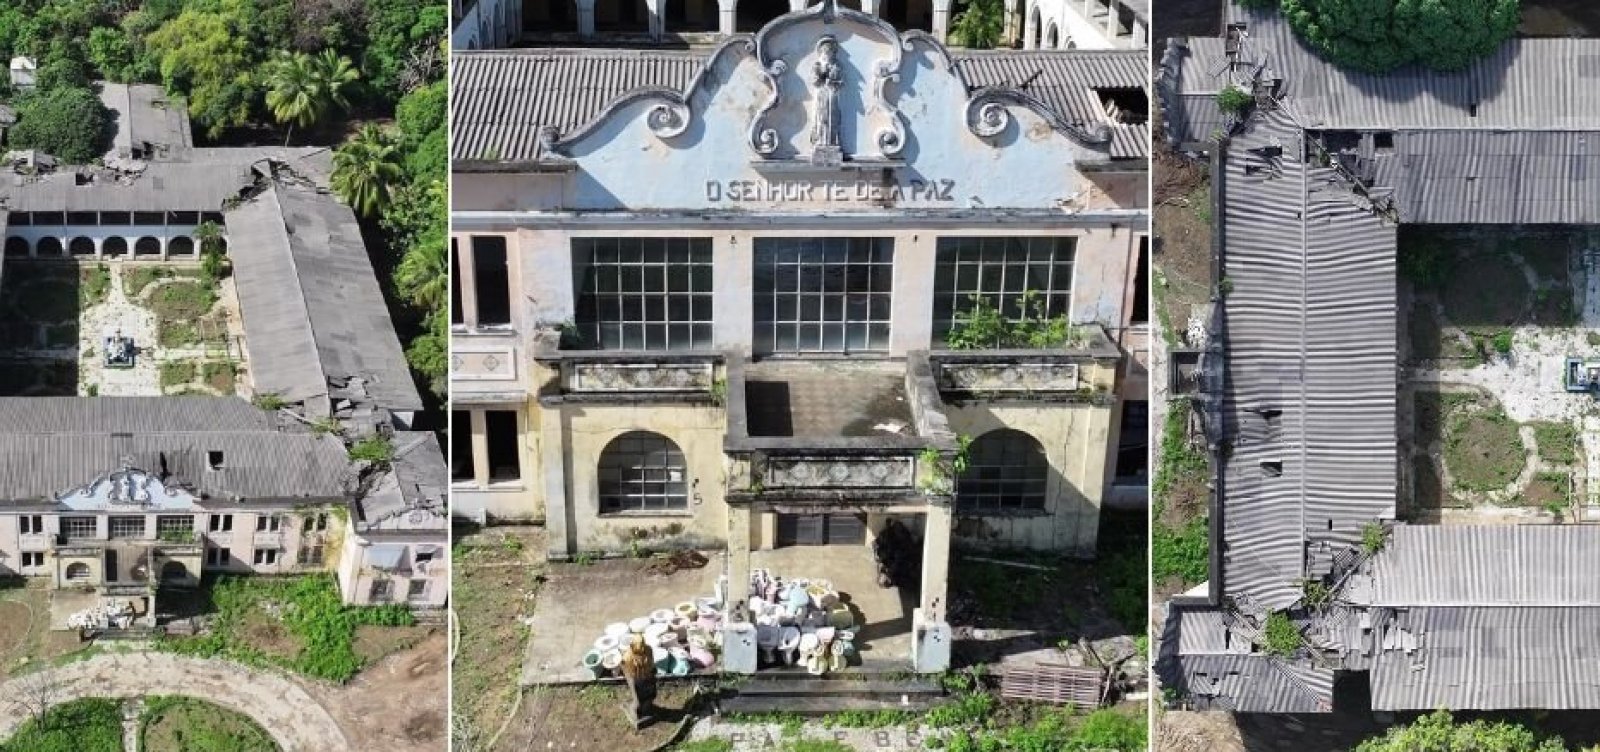 Fechada há 13 anos, Casa de Retiro São Francisco resiste à especulação imobiliária  em um dos bairros mais caros de Salvador